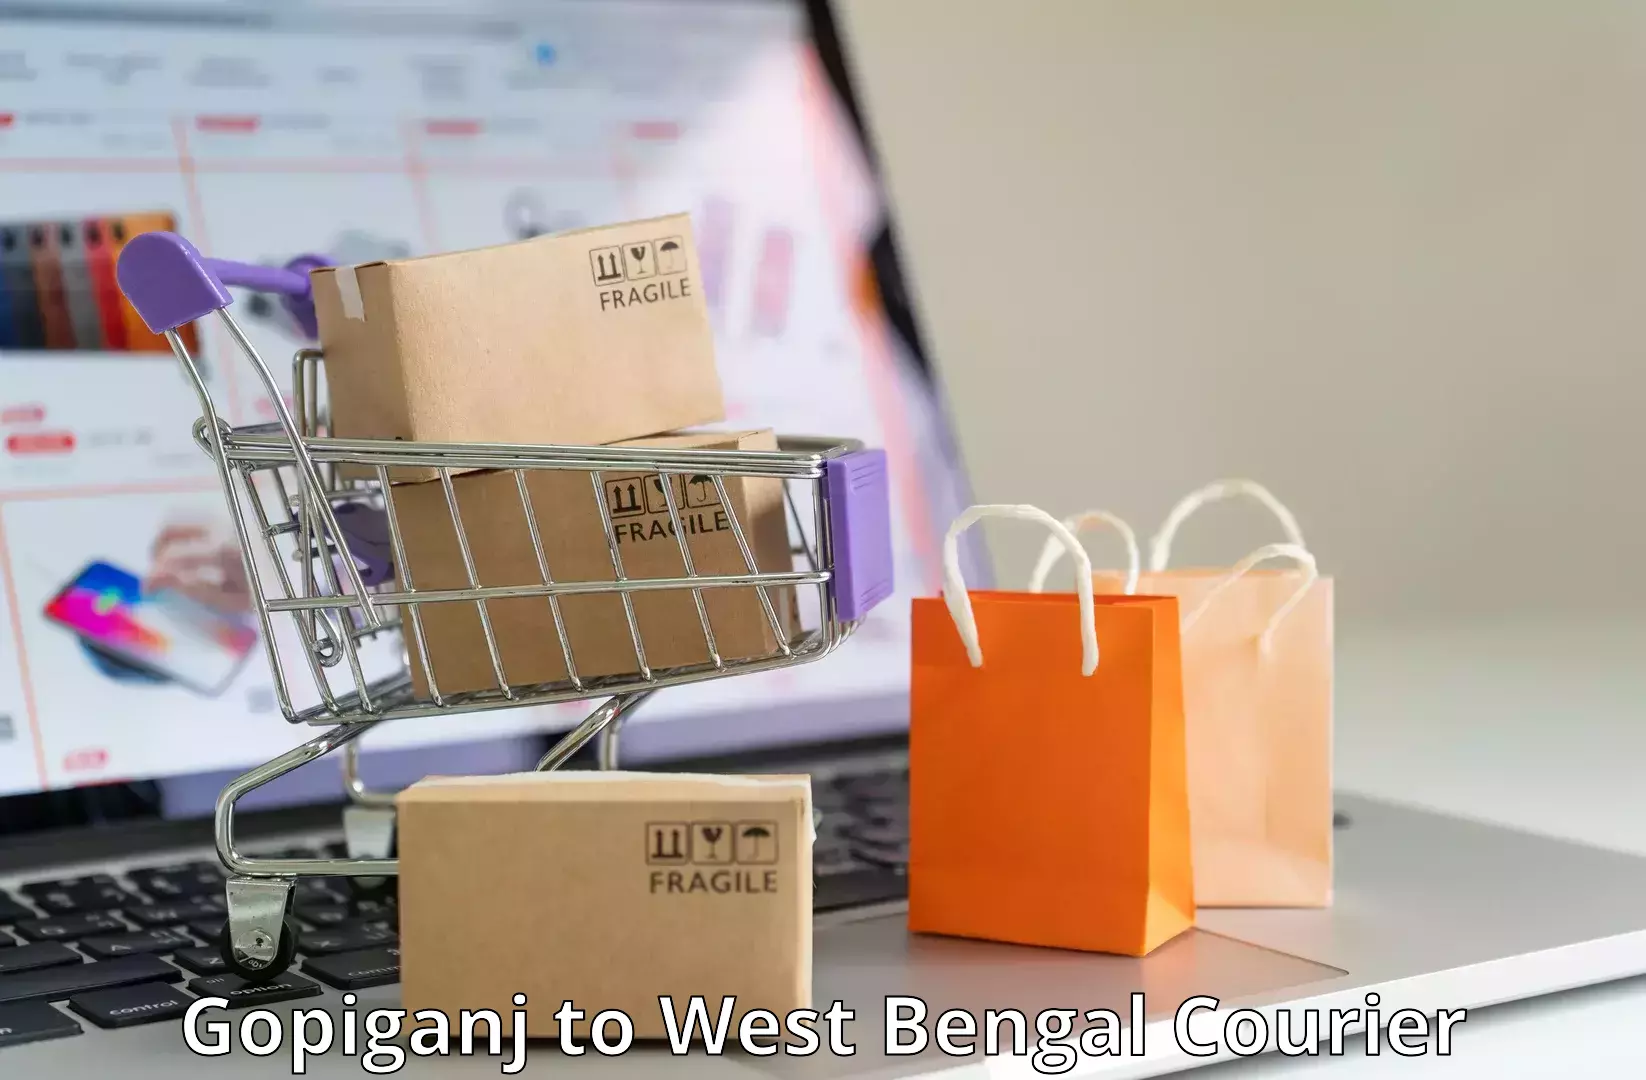 Efficient parcel service Gopiganj to Bandel